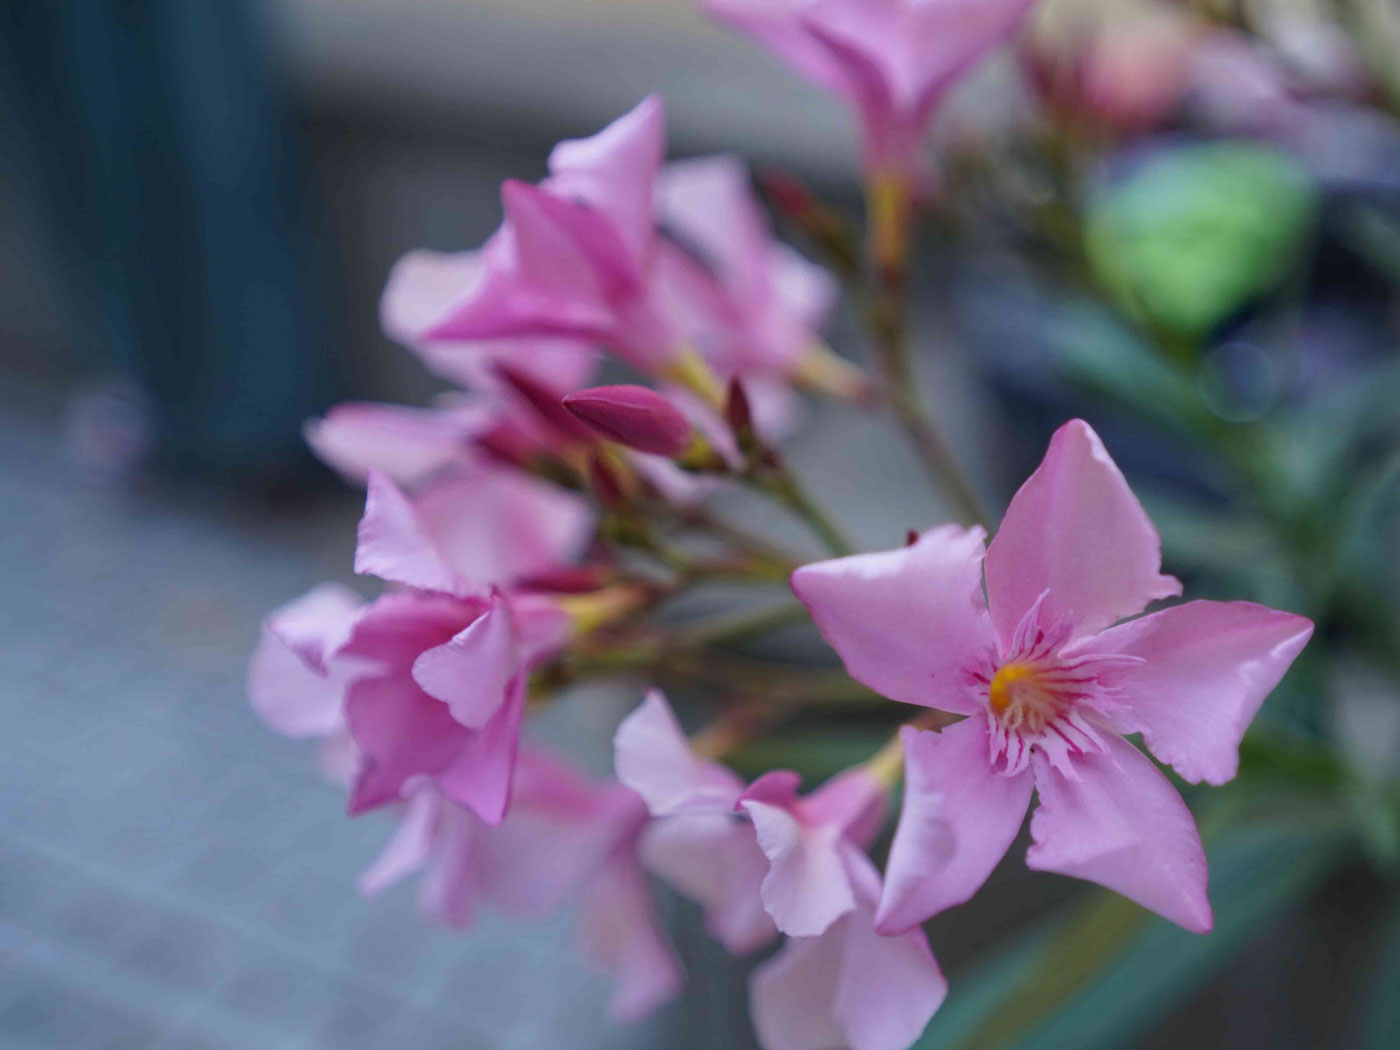 Nahaufnahme mehrerer rosa Blüten aus Else’s Fotowerkstatt.